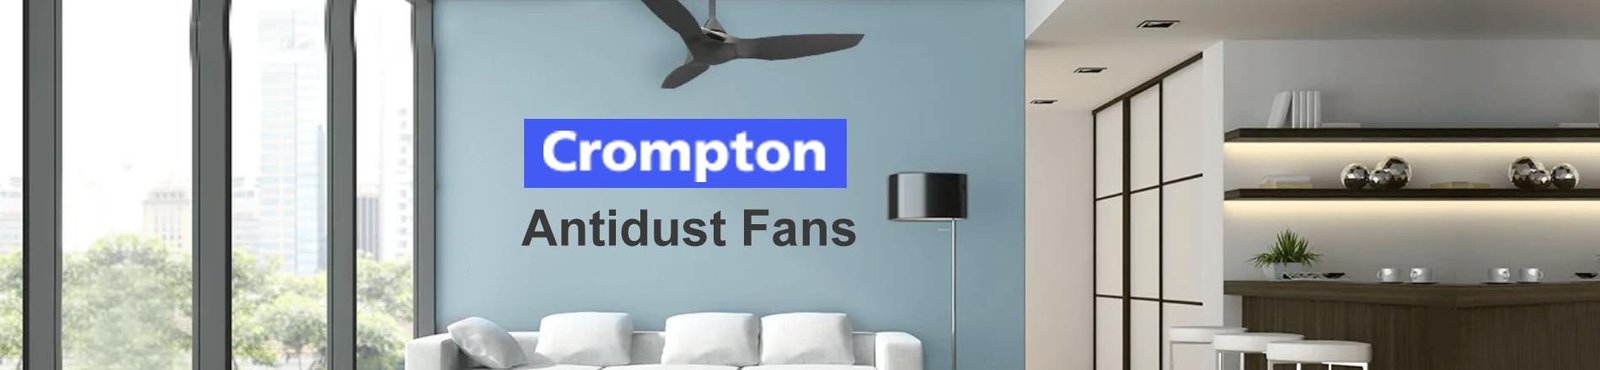 Crompton-fan-banner-1